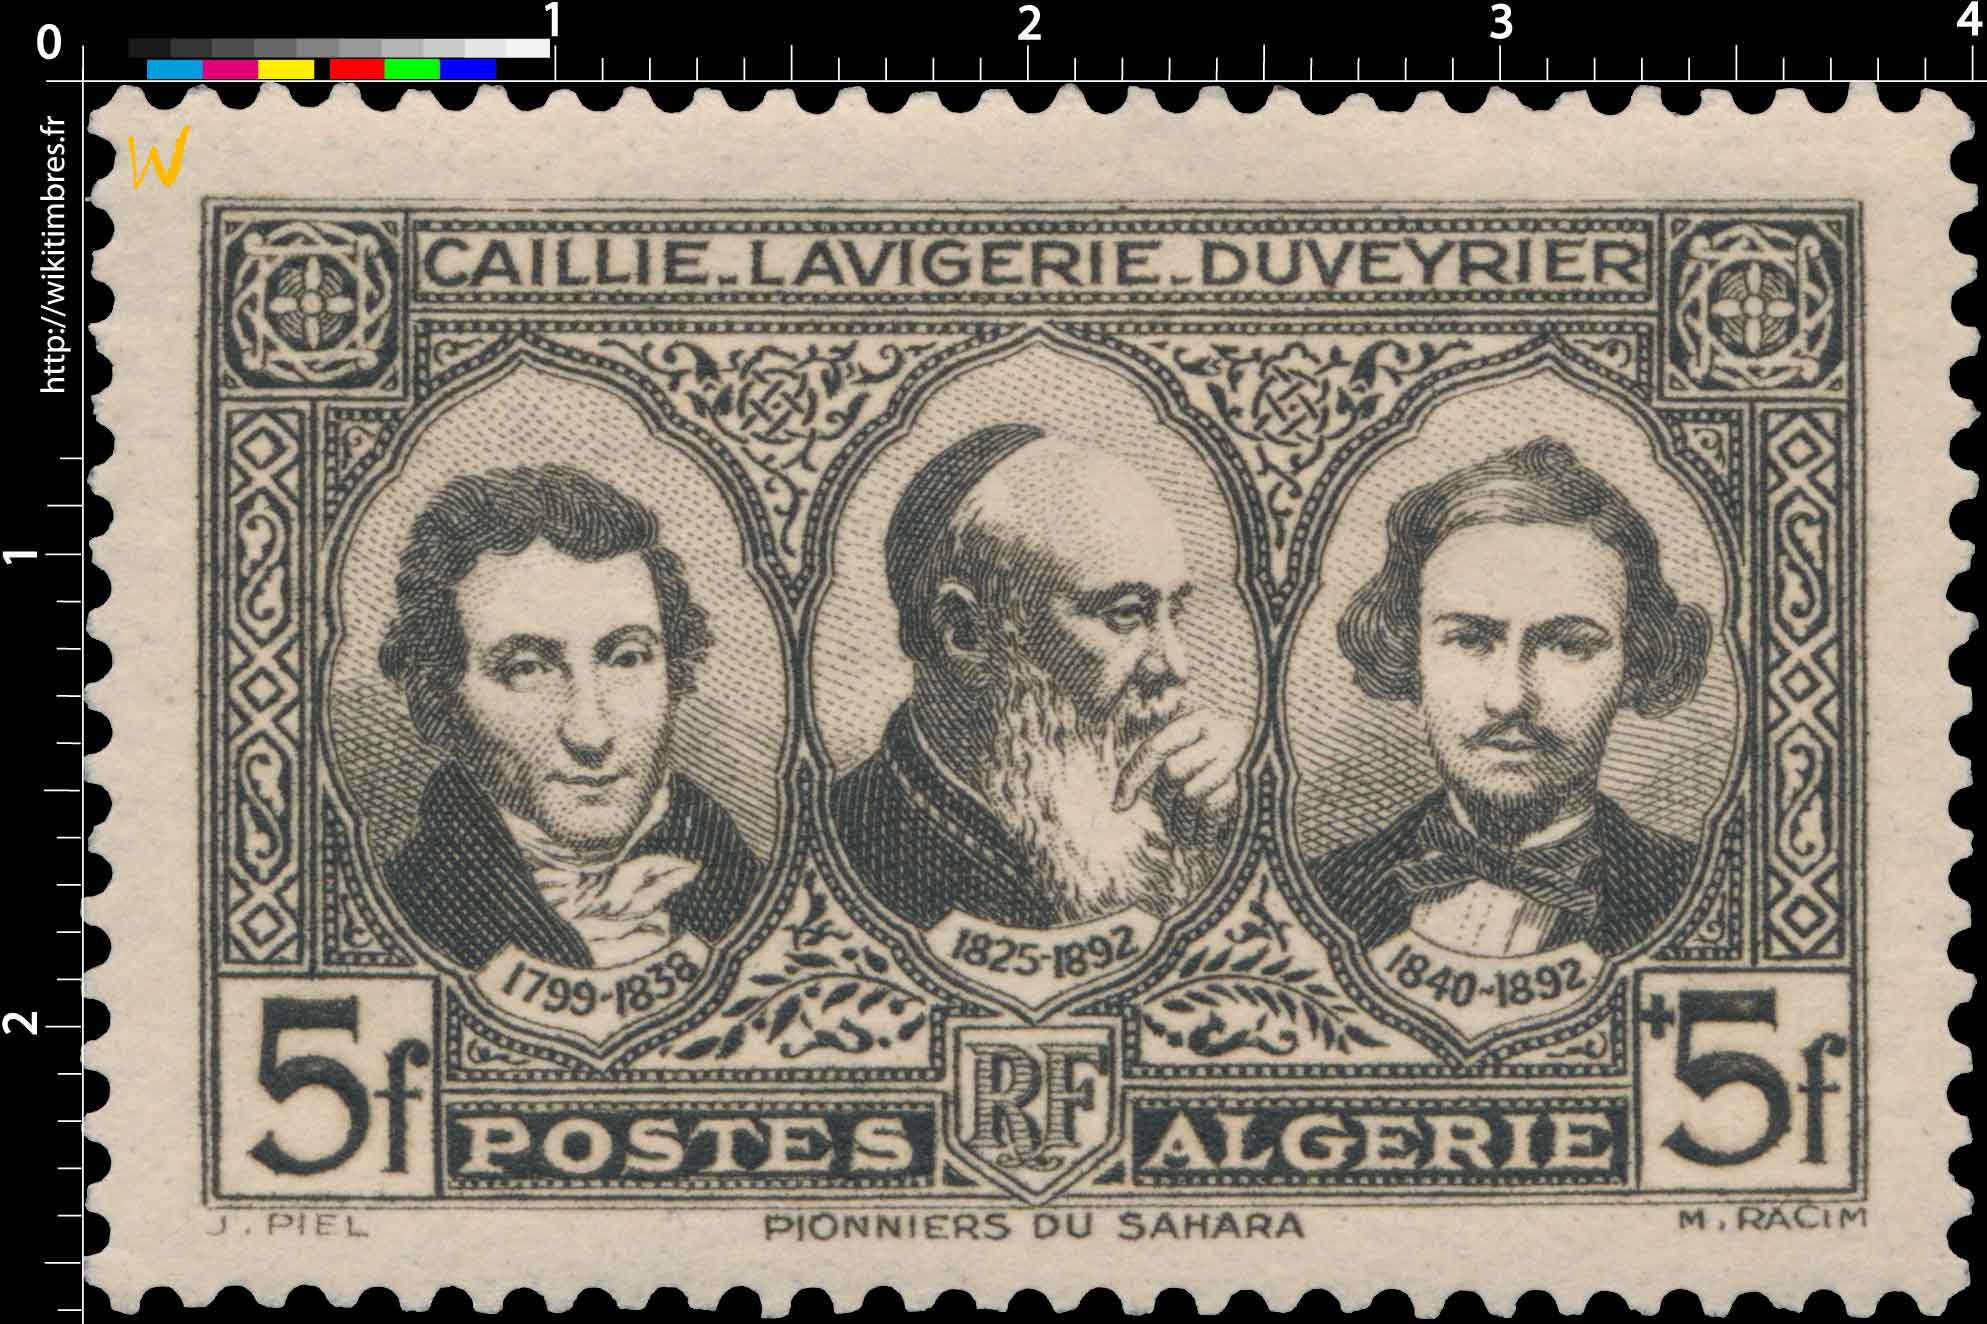 Algérie - Caillié, Lavigerie et Duveyrier